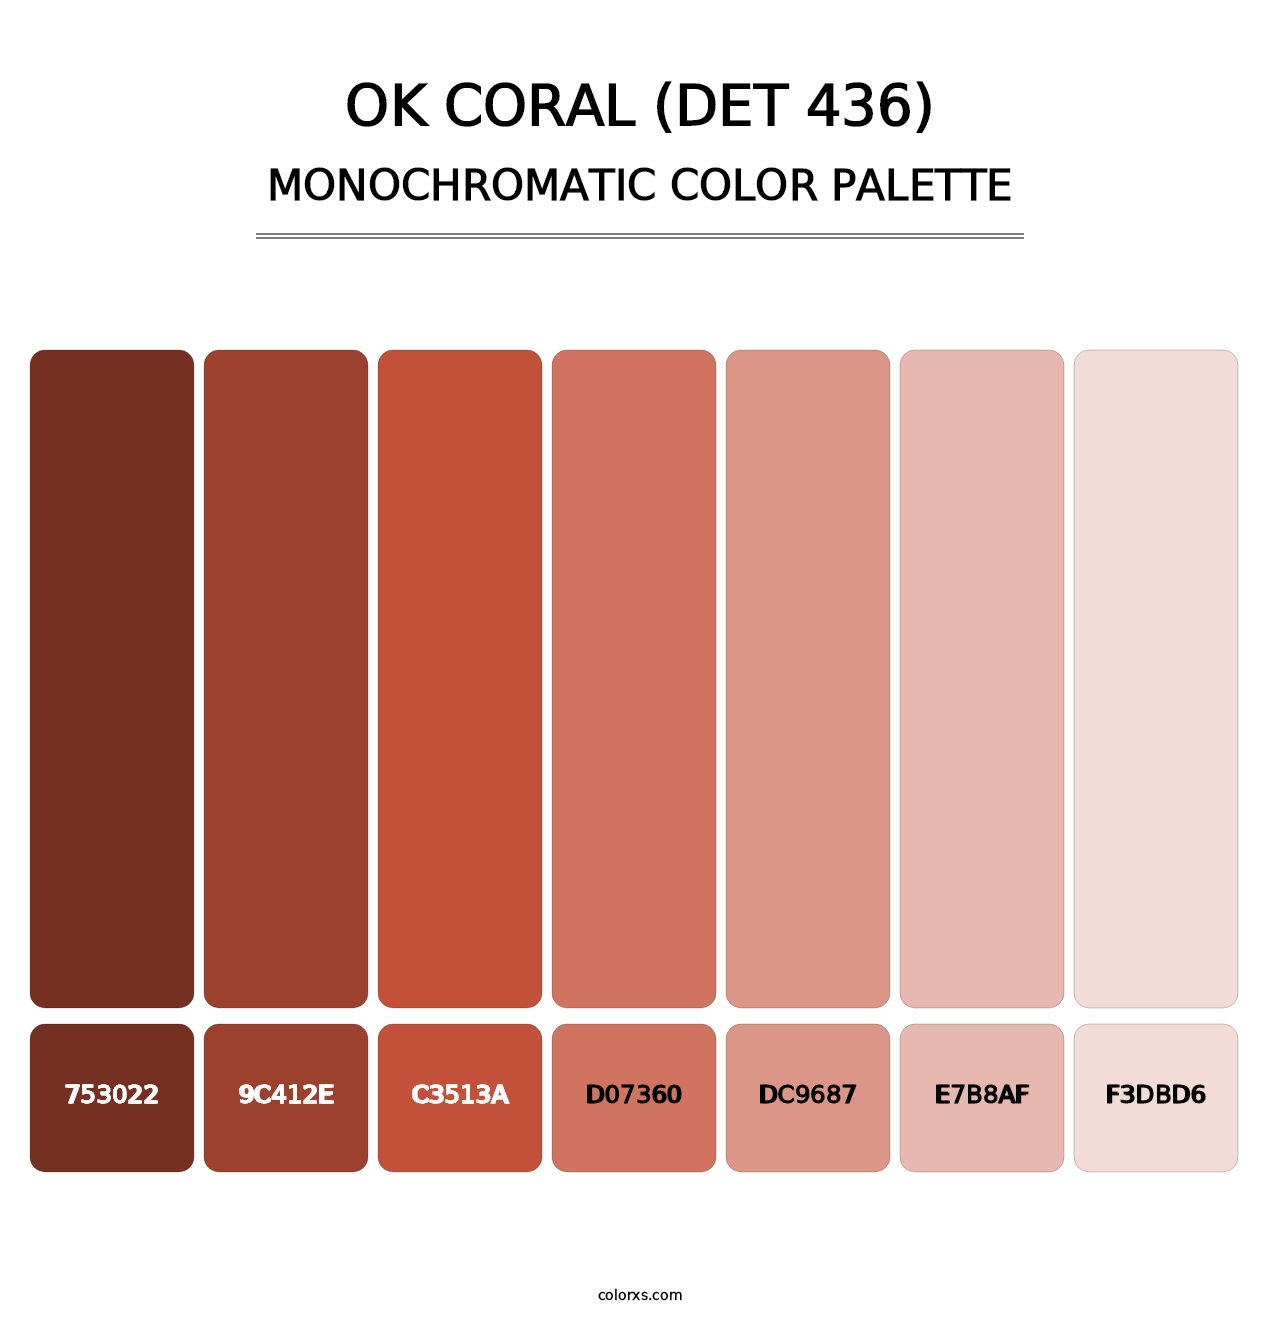 OK Coral (DET 436) - Monochromatic Color Palette